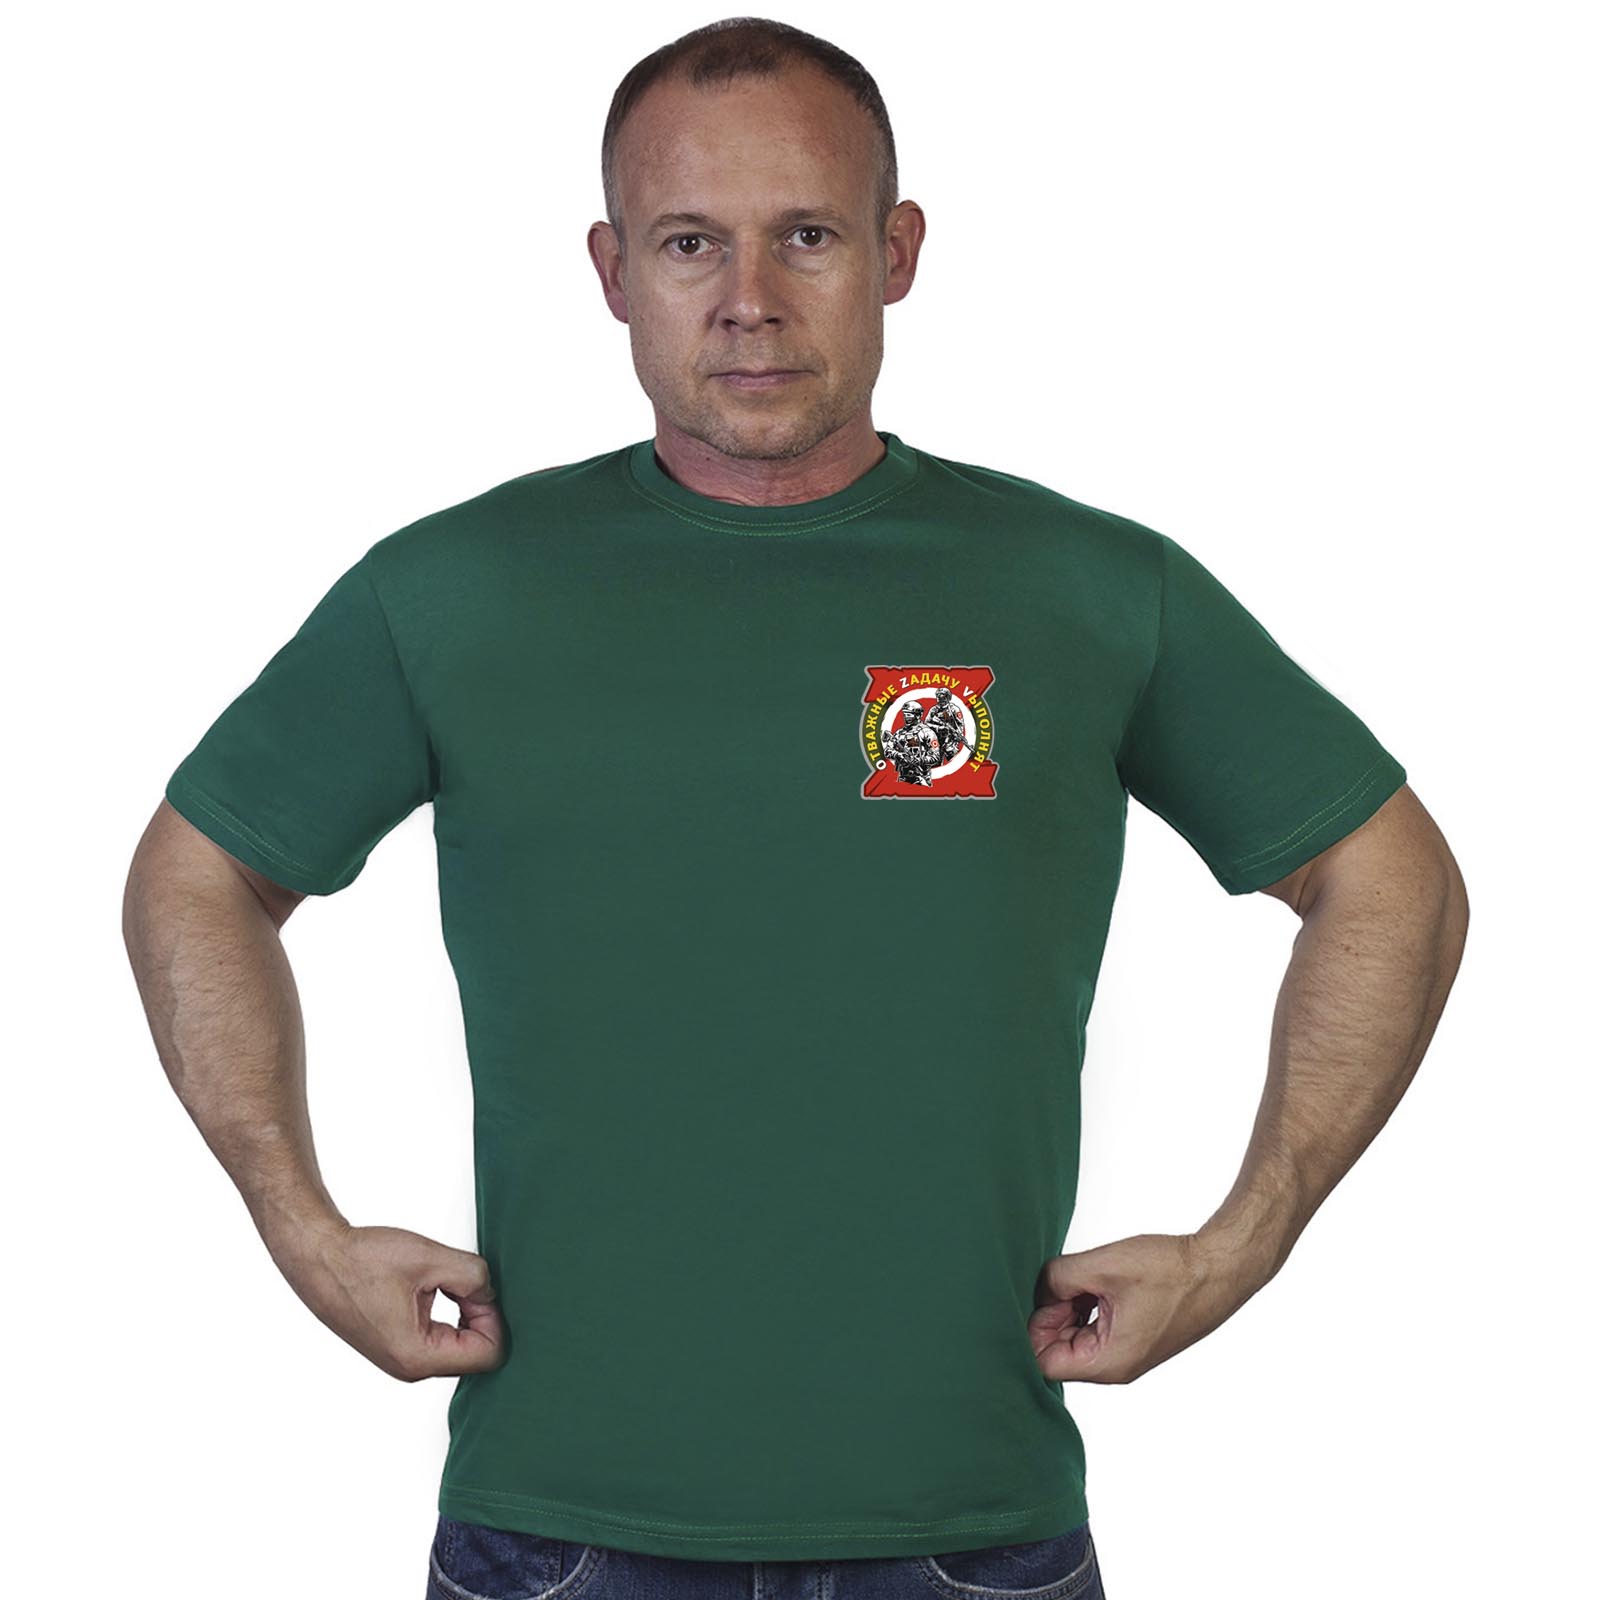 Зелёная футболка с термотрансфером "Отважные Zадачу Vыполнят"